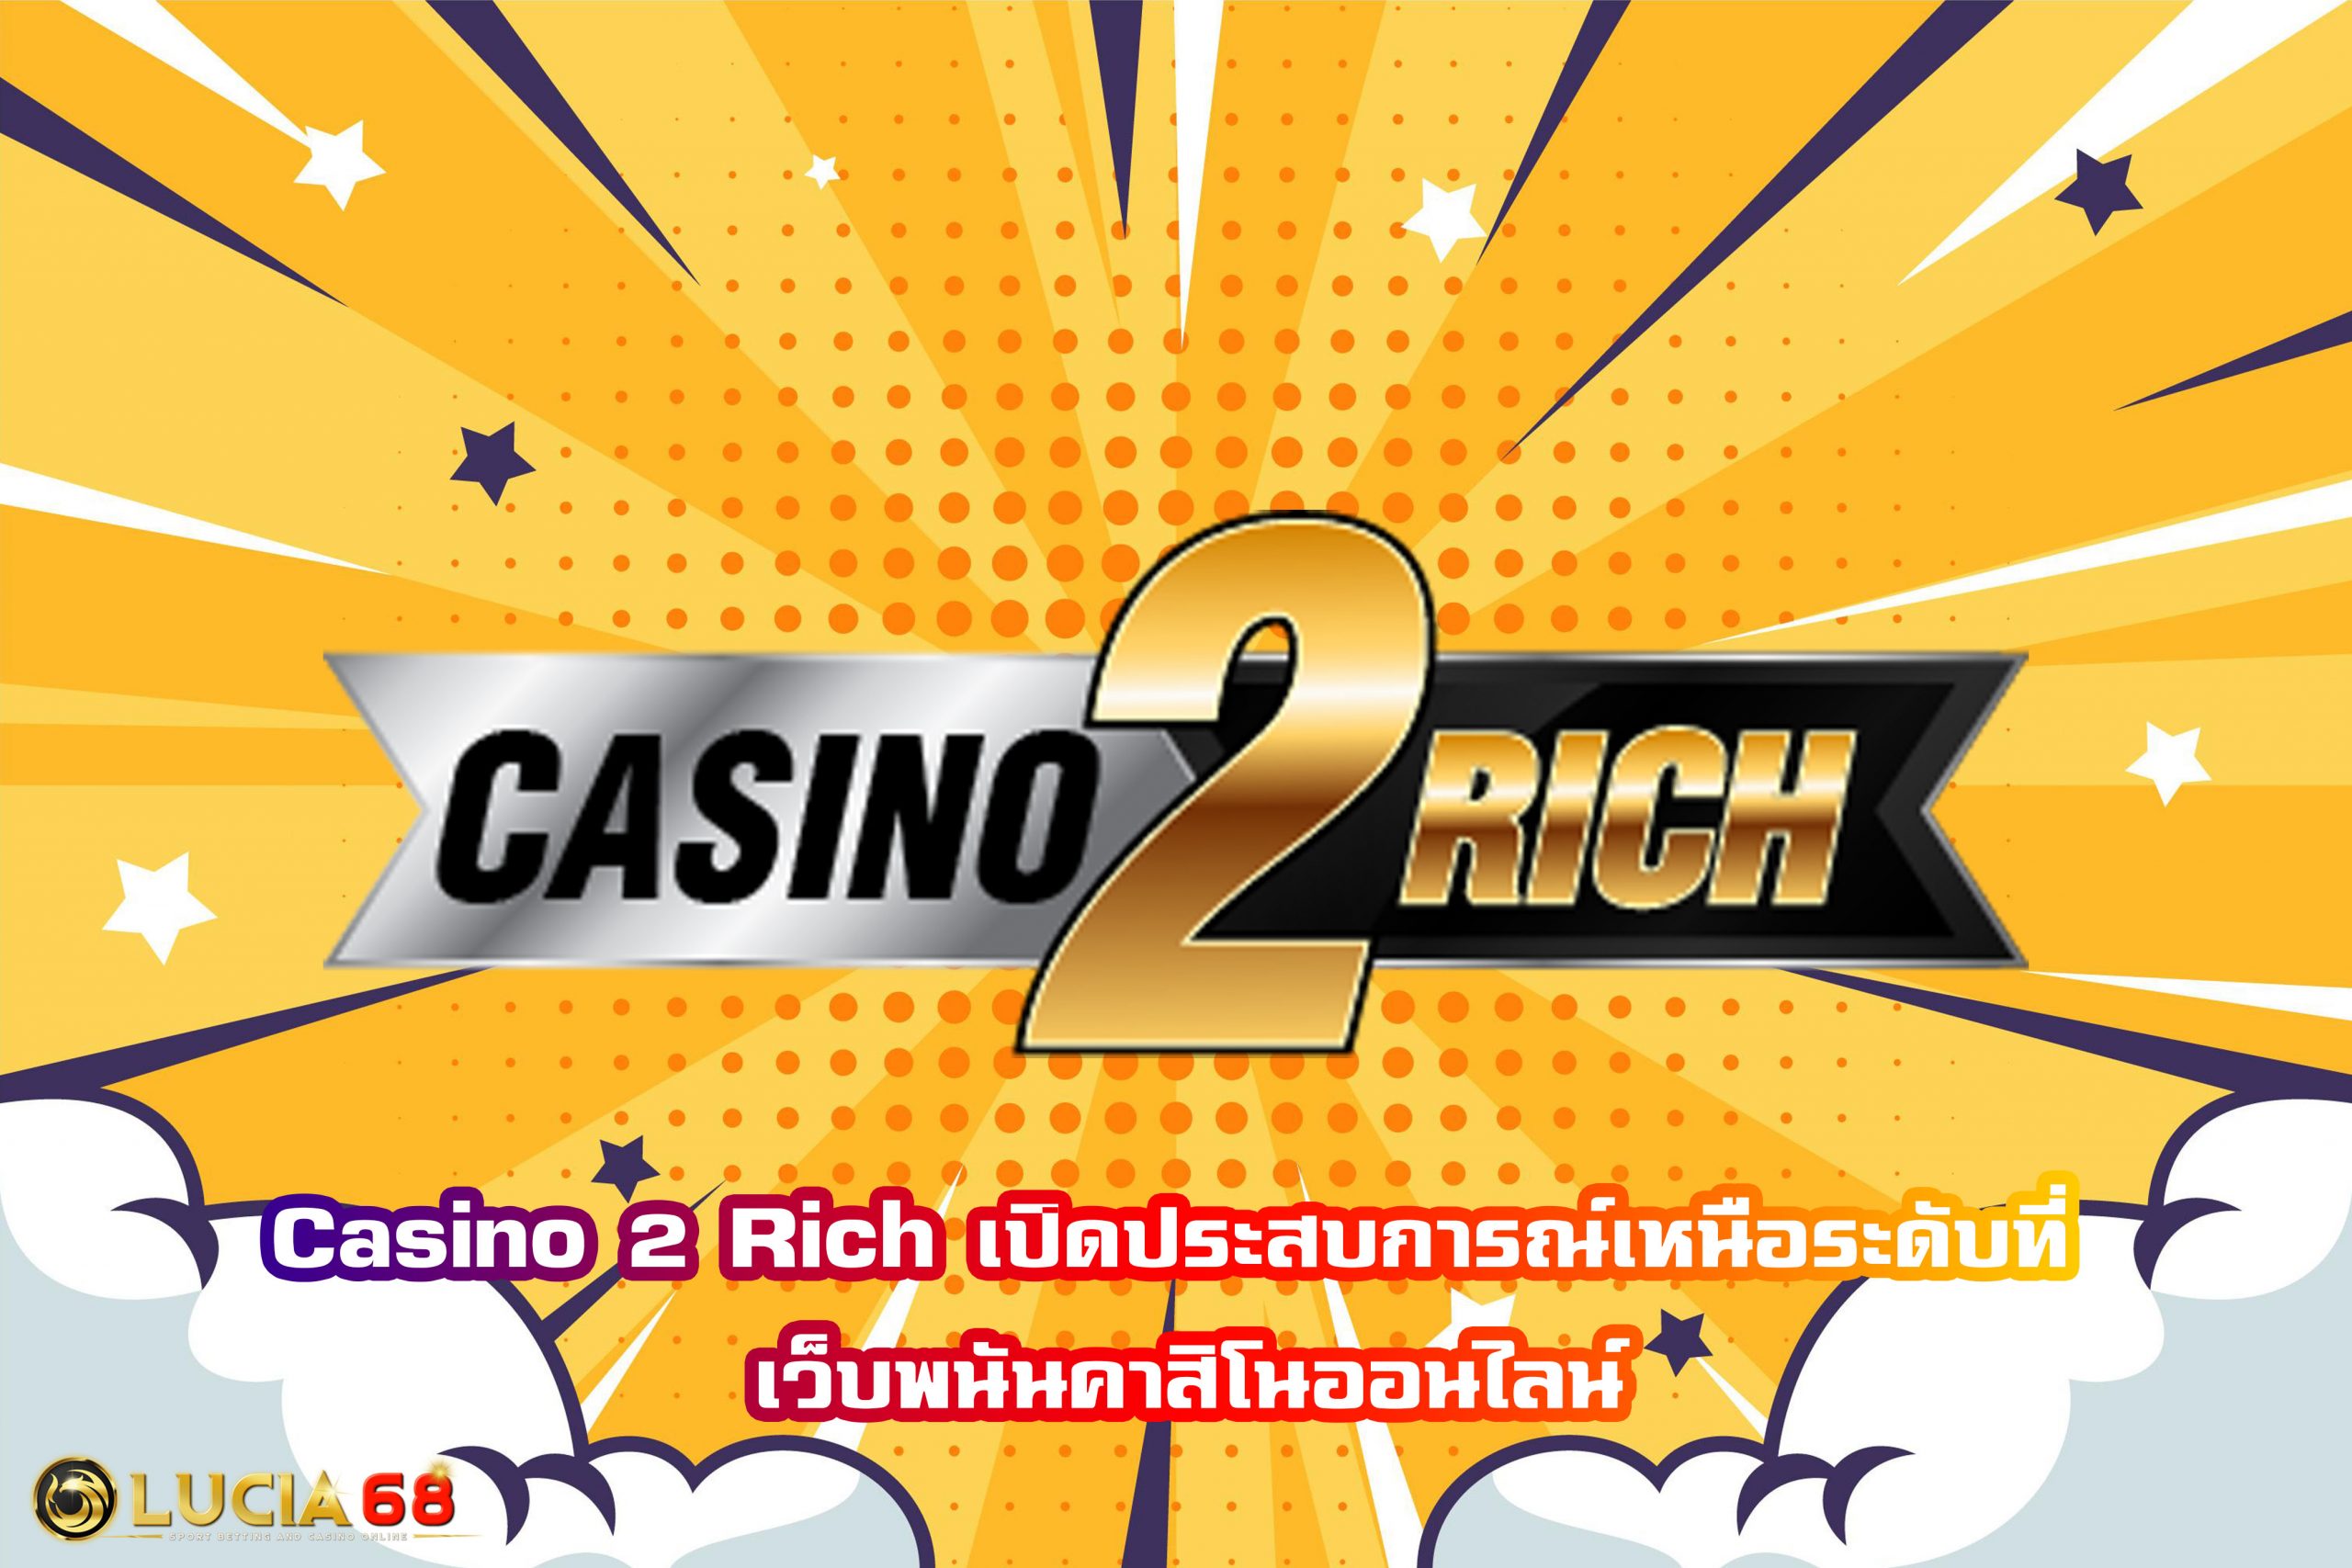 Casino 2 Rich เปิดประสบการณ์เหนือระดับที่ เว็บพนันคาสิโนออนไลน์